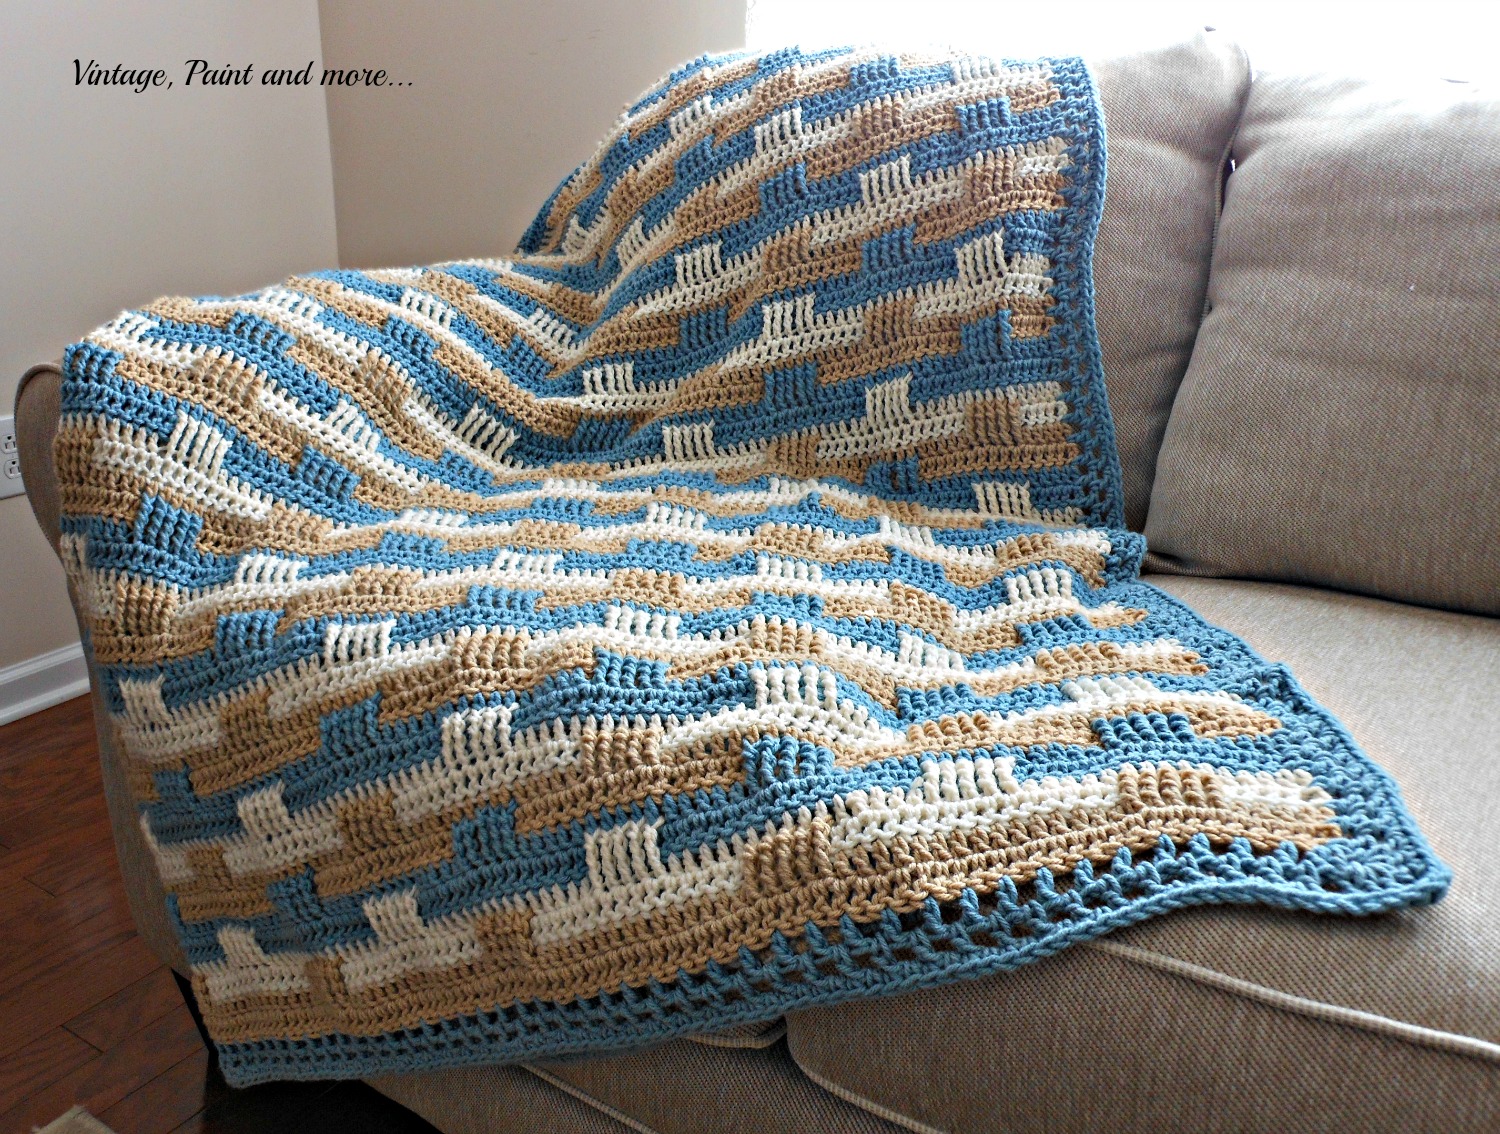 Crochet weave pattern